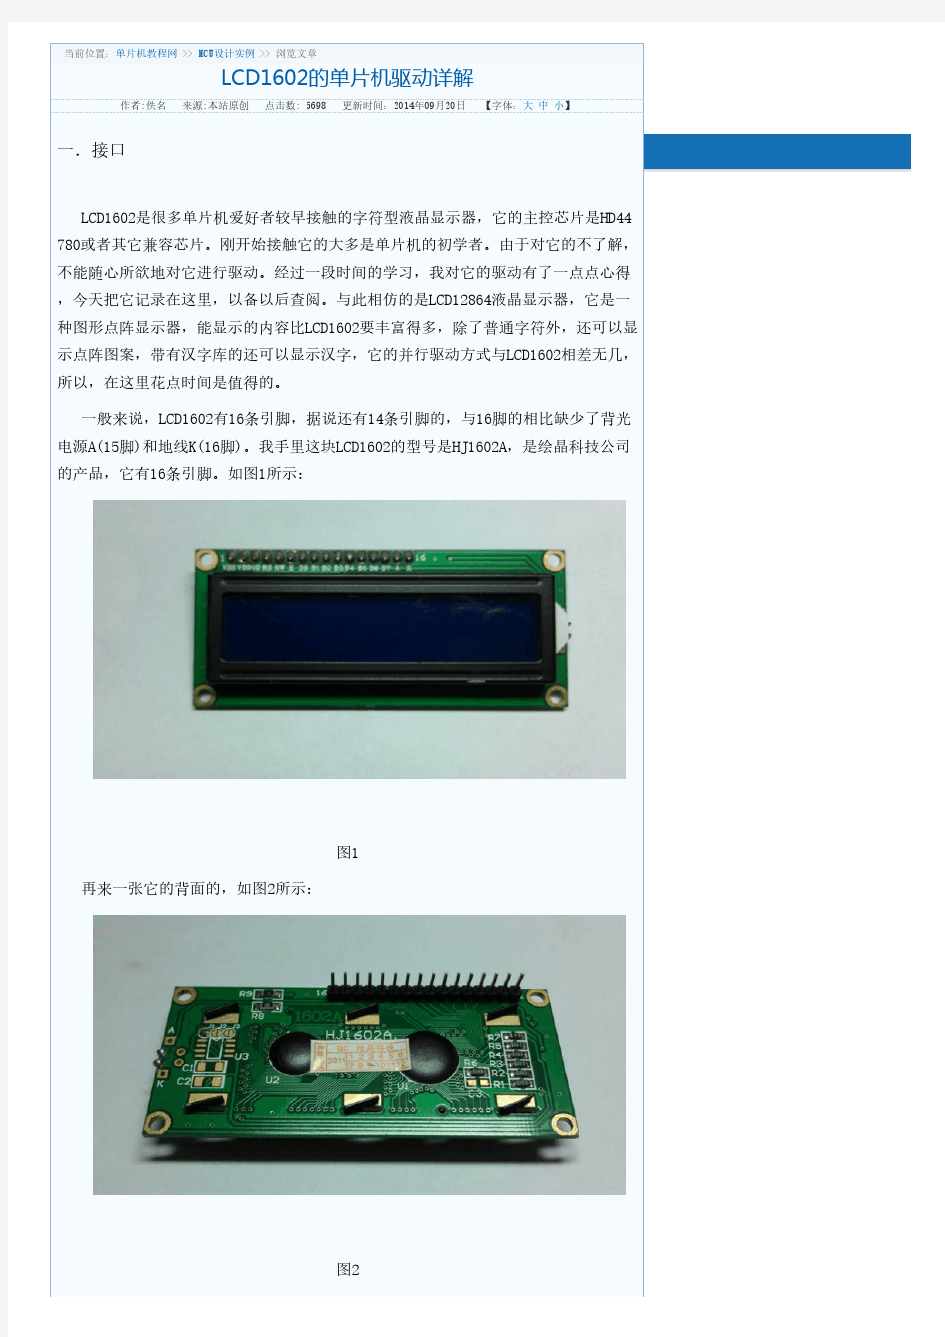 LCD 使用手册 中文详细版